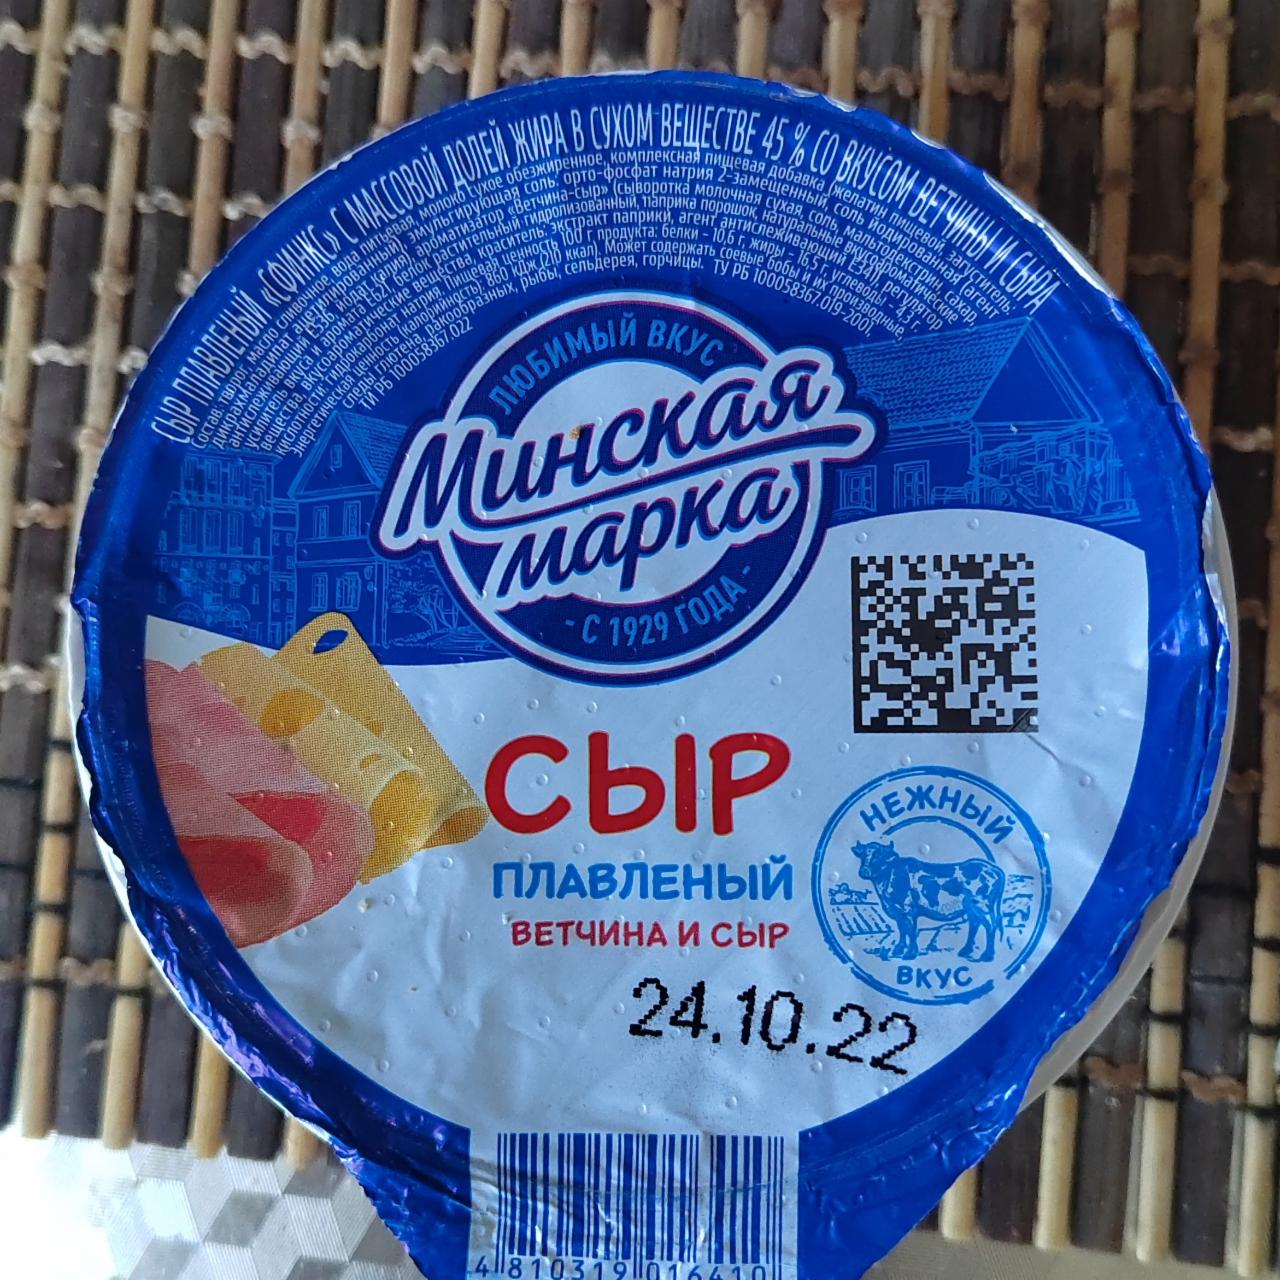 Фото - Сыр плавленый ветчина и сыр Минская марка